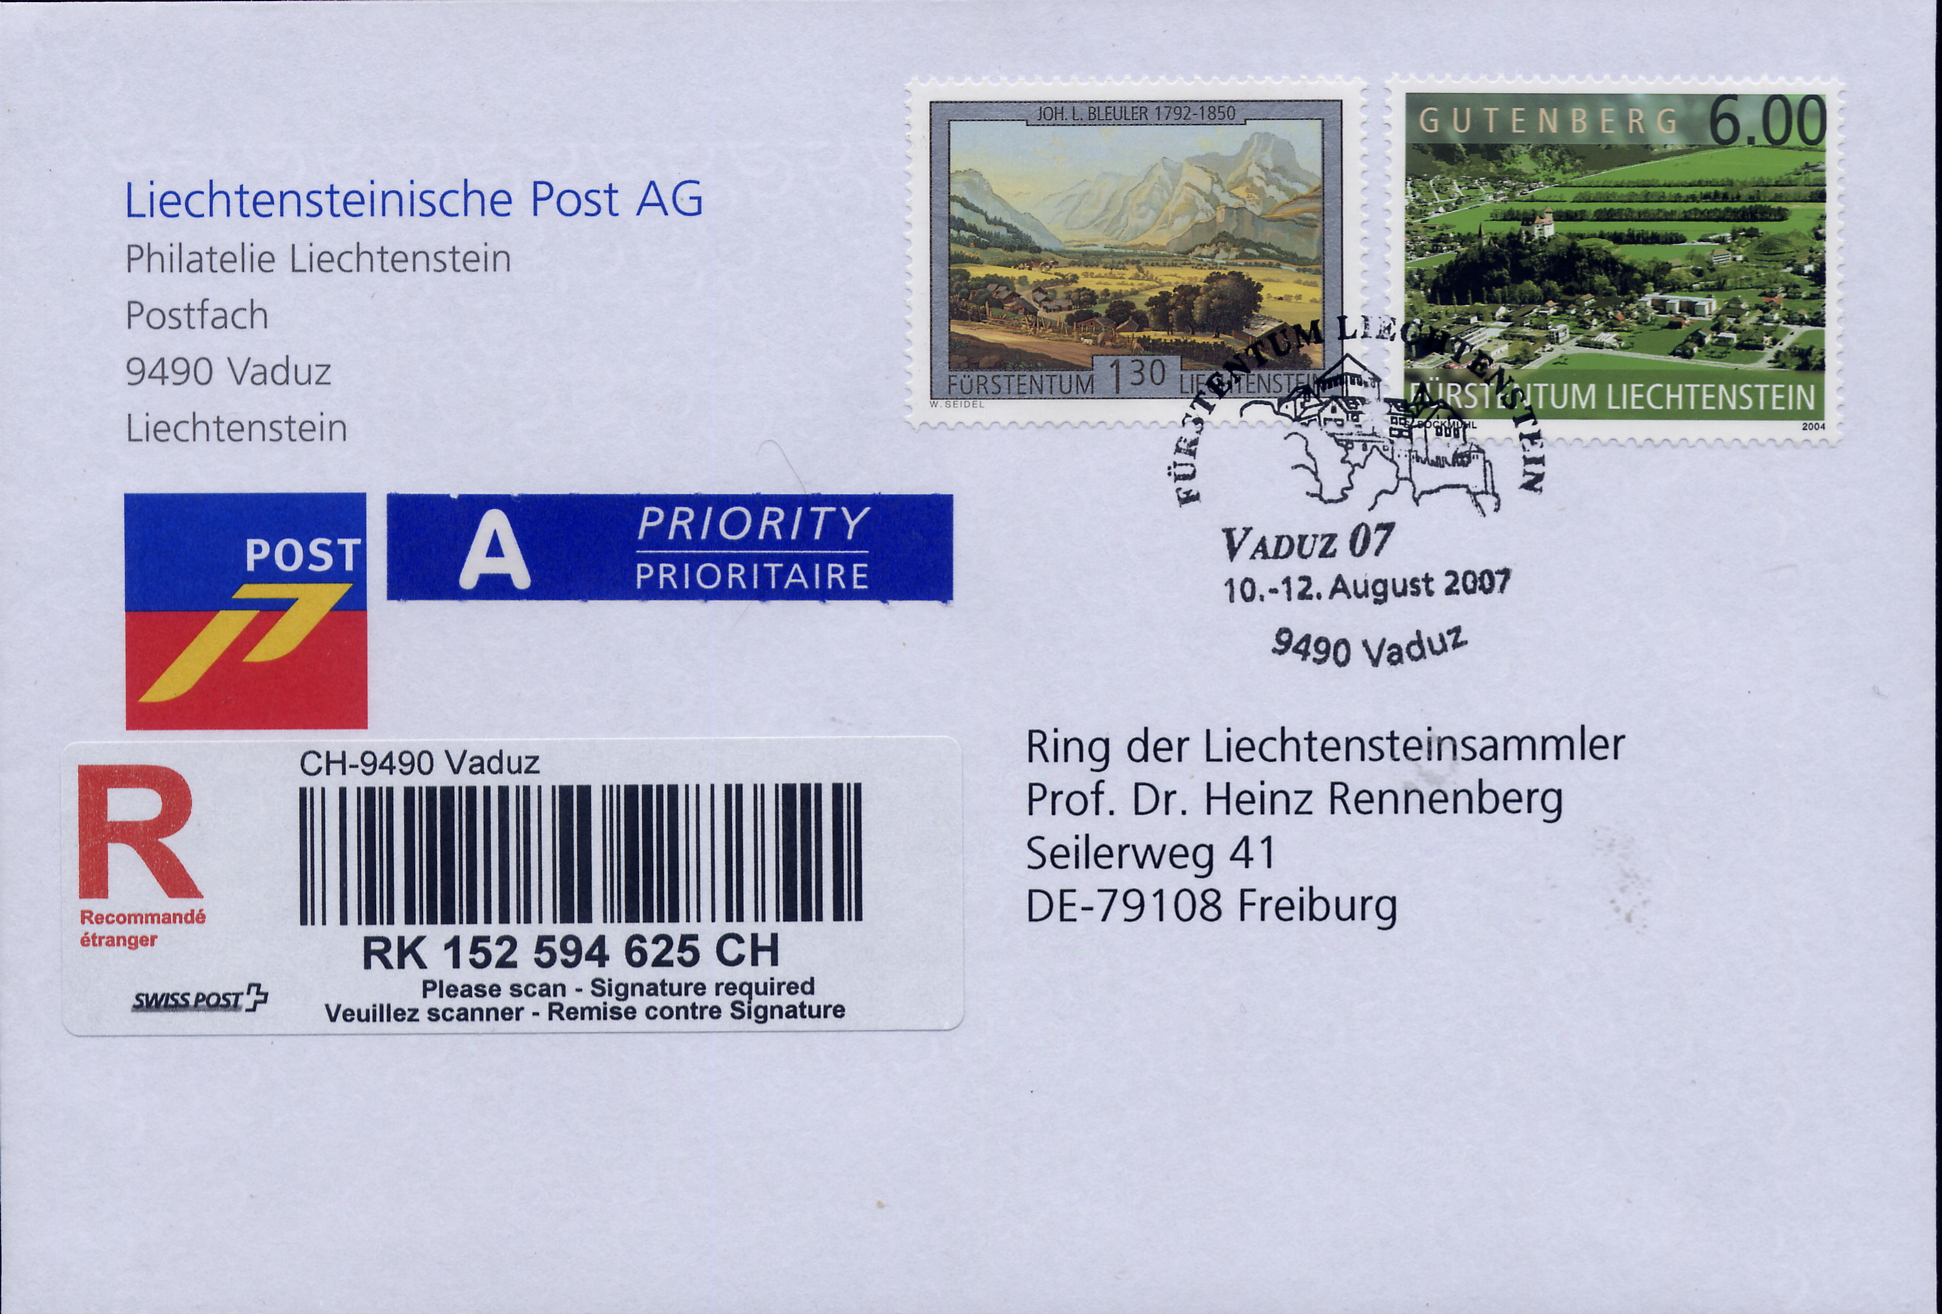 https://swiss-stamps.org/wp-content/uploads/2023/12/2007-8-Vaduz-07-R-Brief.jpg